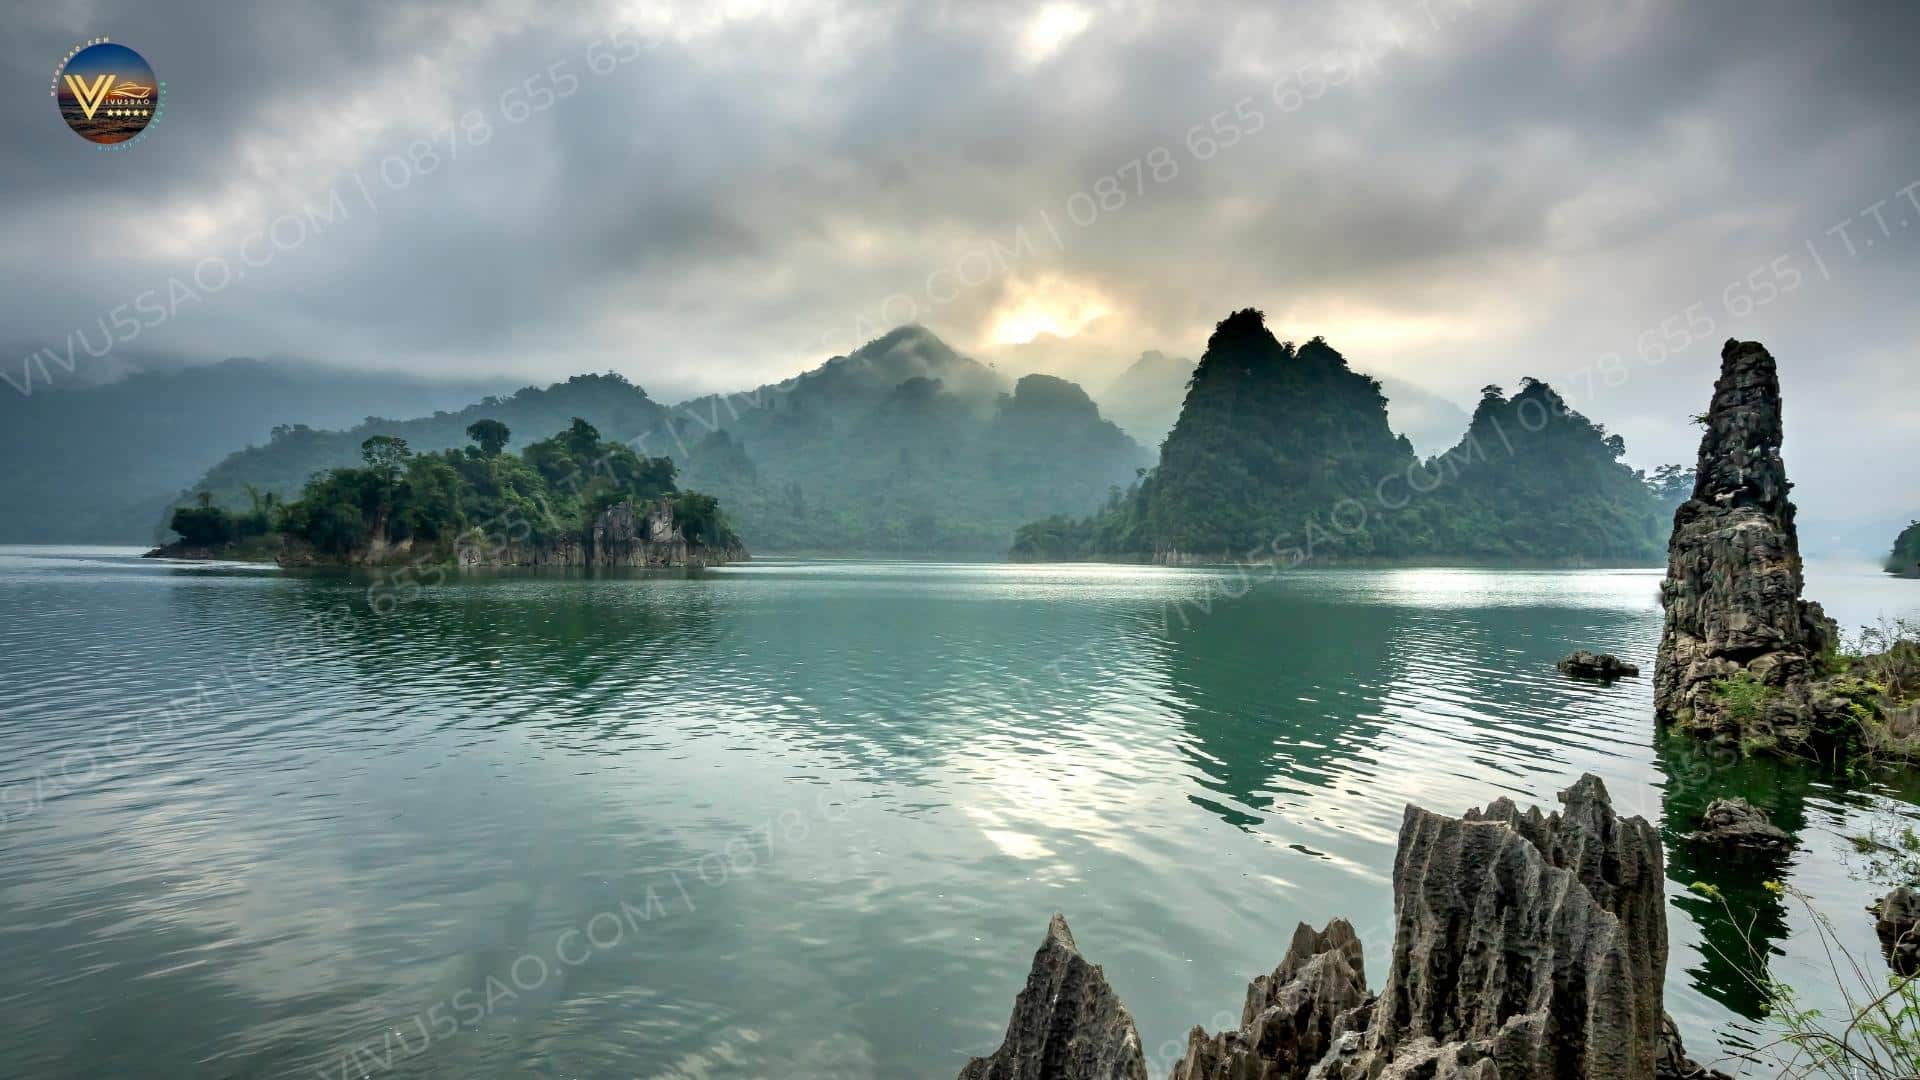 Khu du lịch Na Hang 2023 - "Vịnh Hạ Long thu nhỏ" ở vùng núi phía Bắc Việt Nam